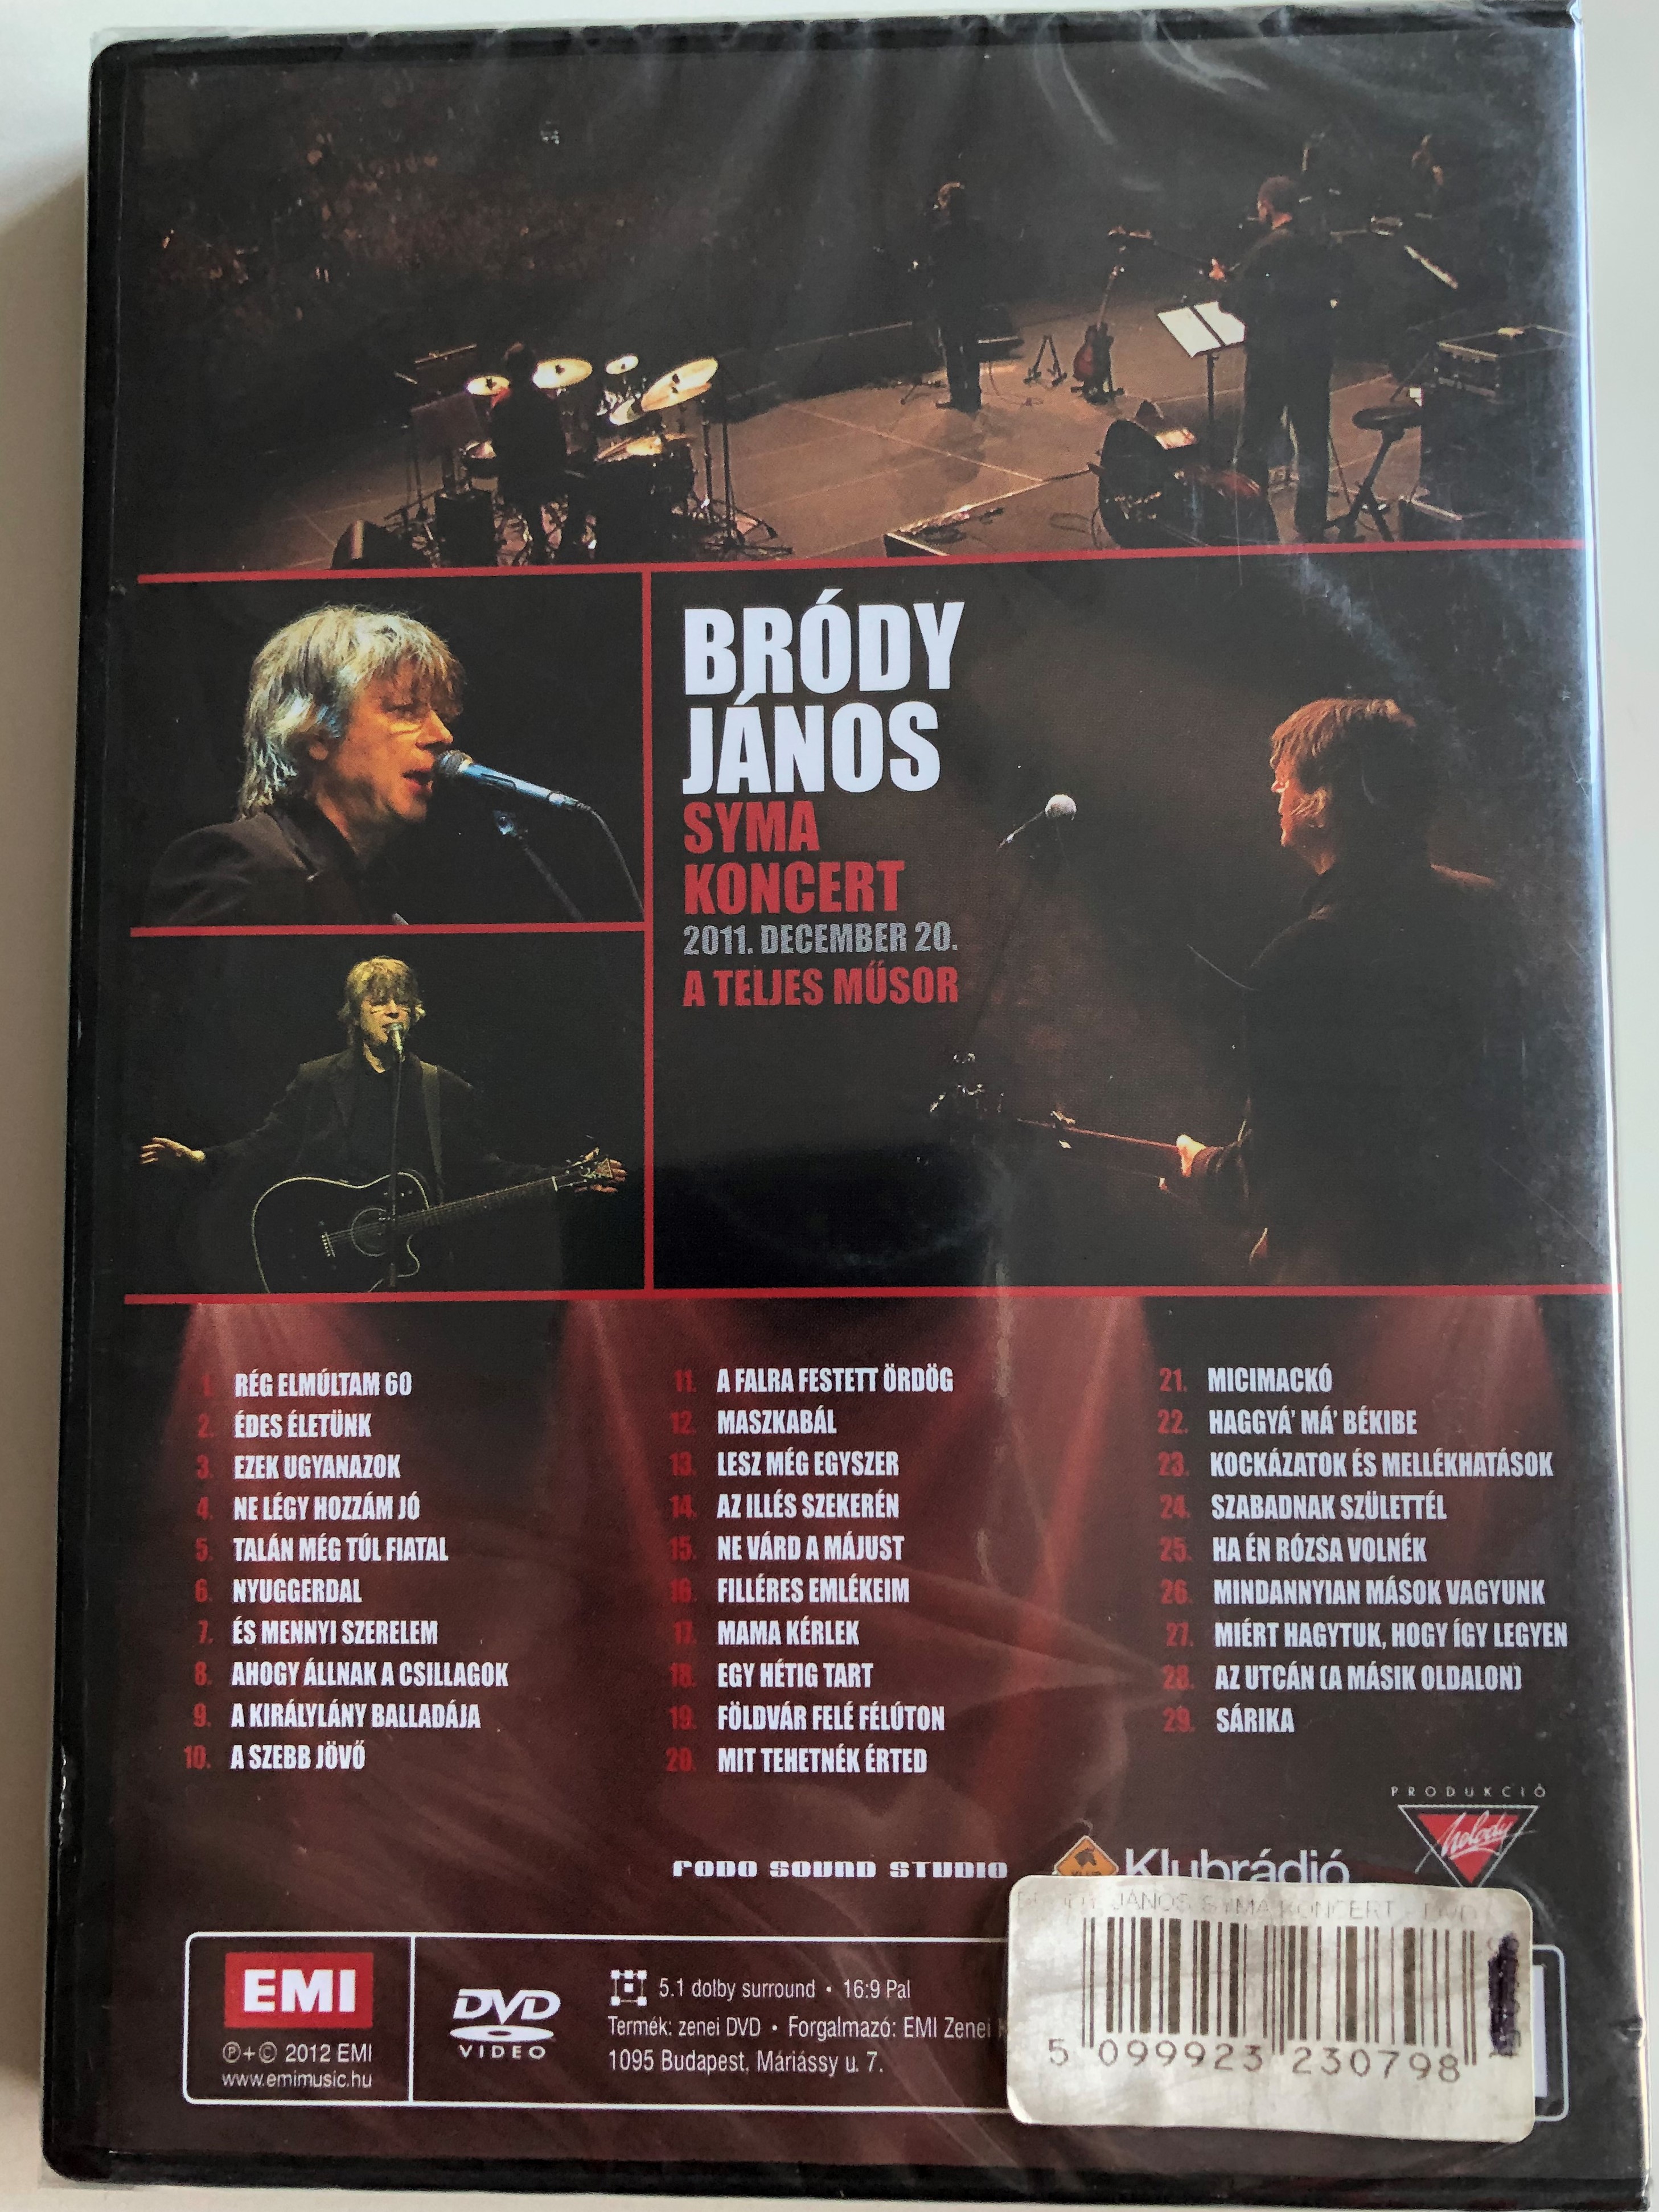 Bródy János - Syma Koncert DVD 2012 1.JPG